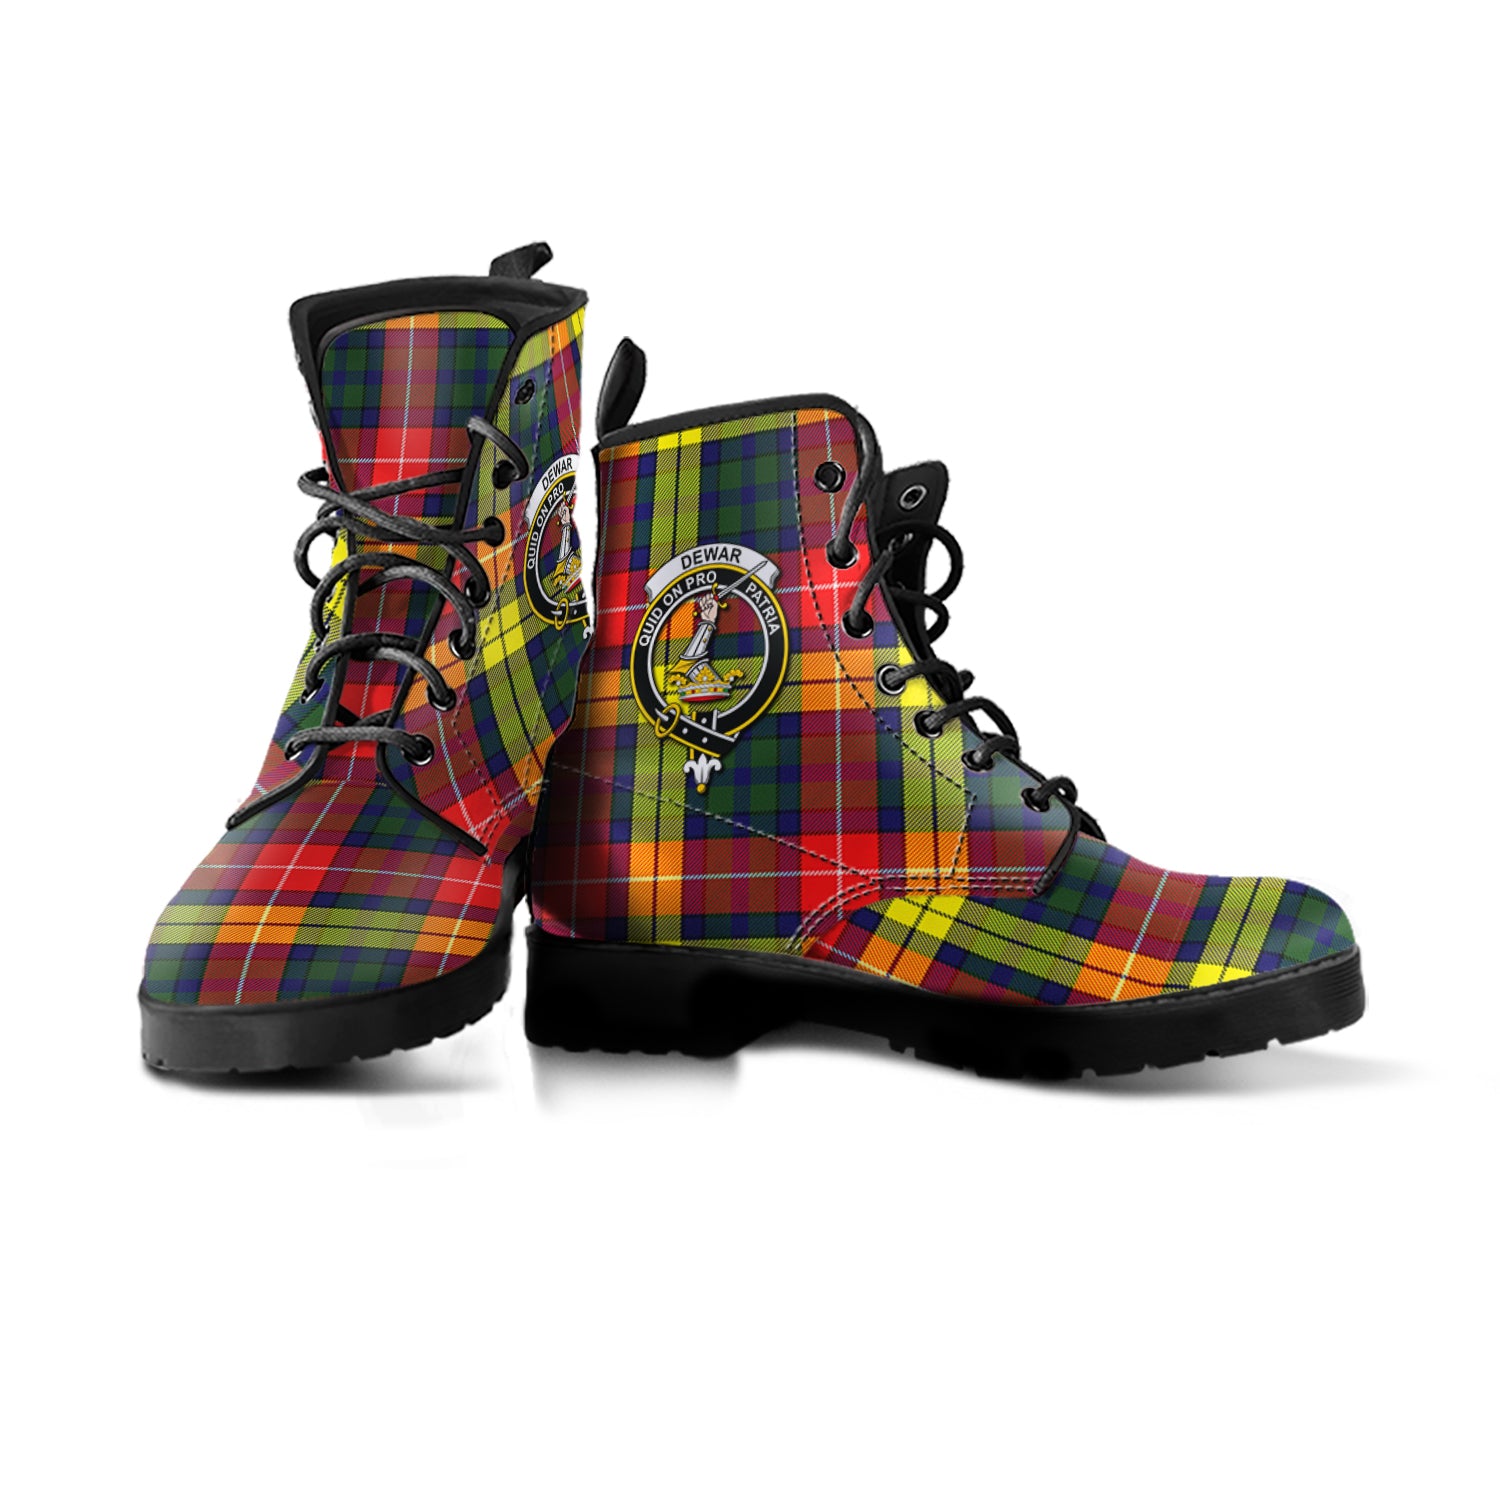 scottish-dewar-clan-crest-tartan-leather-boots